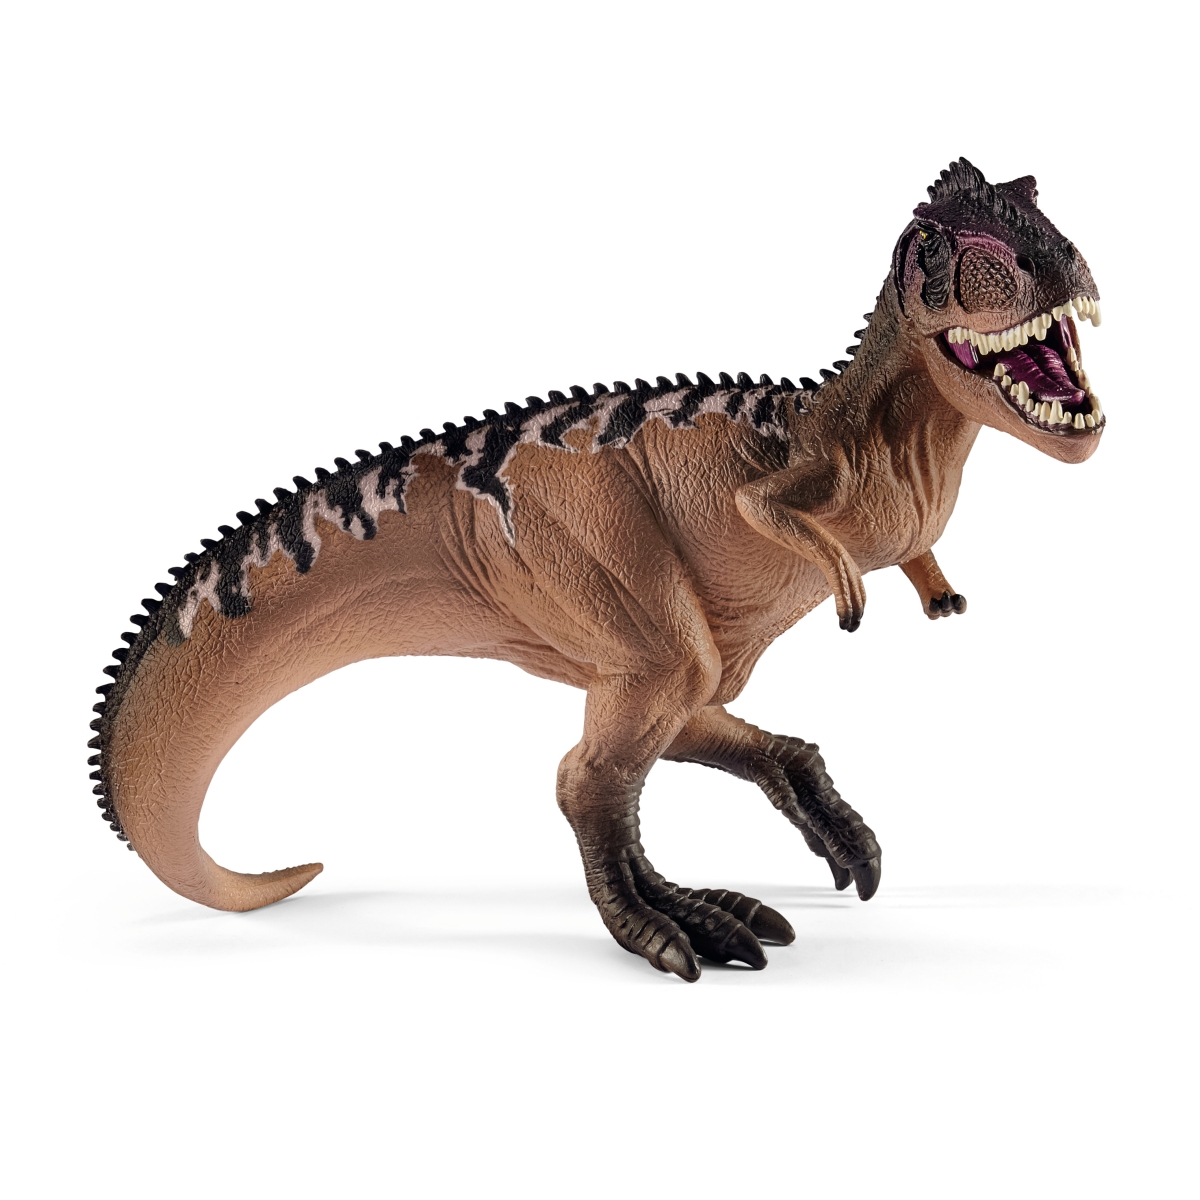 15010　ギガノトサウルス（ブラウン）　【シュライヒ】　DINOSAURS/恐竜画像